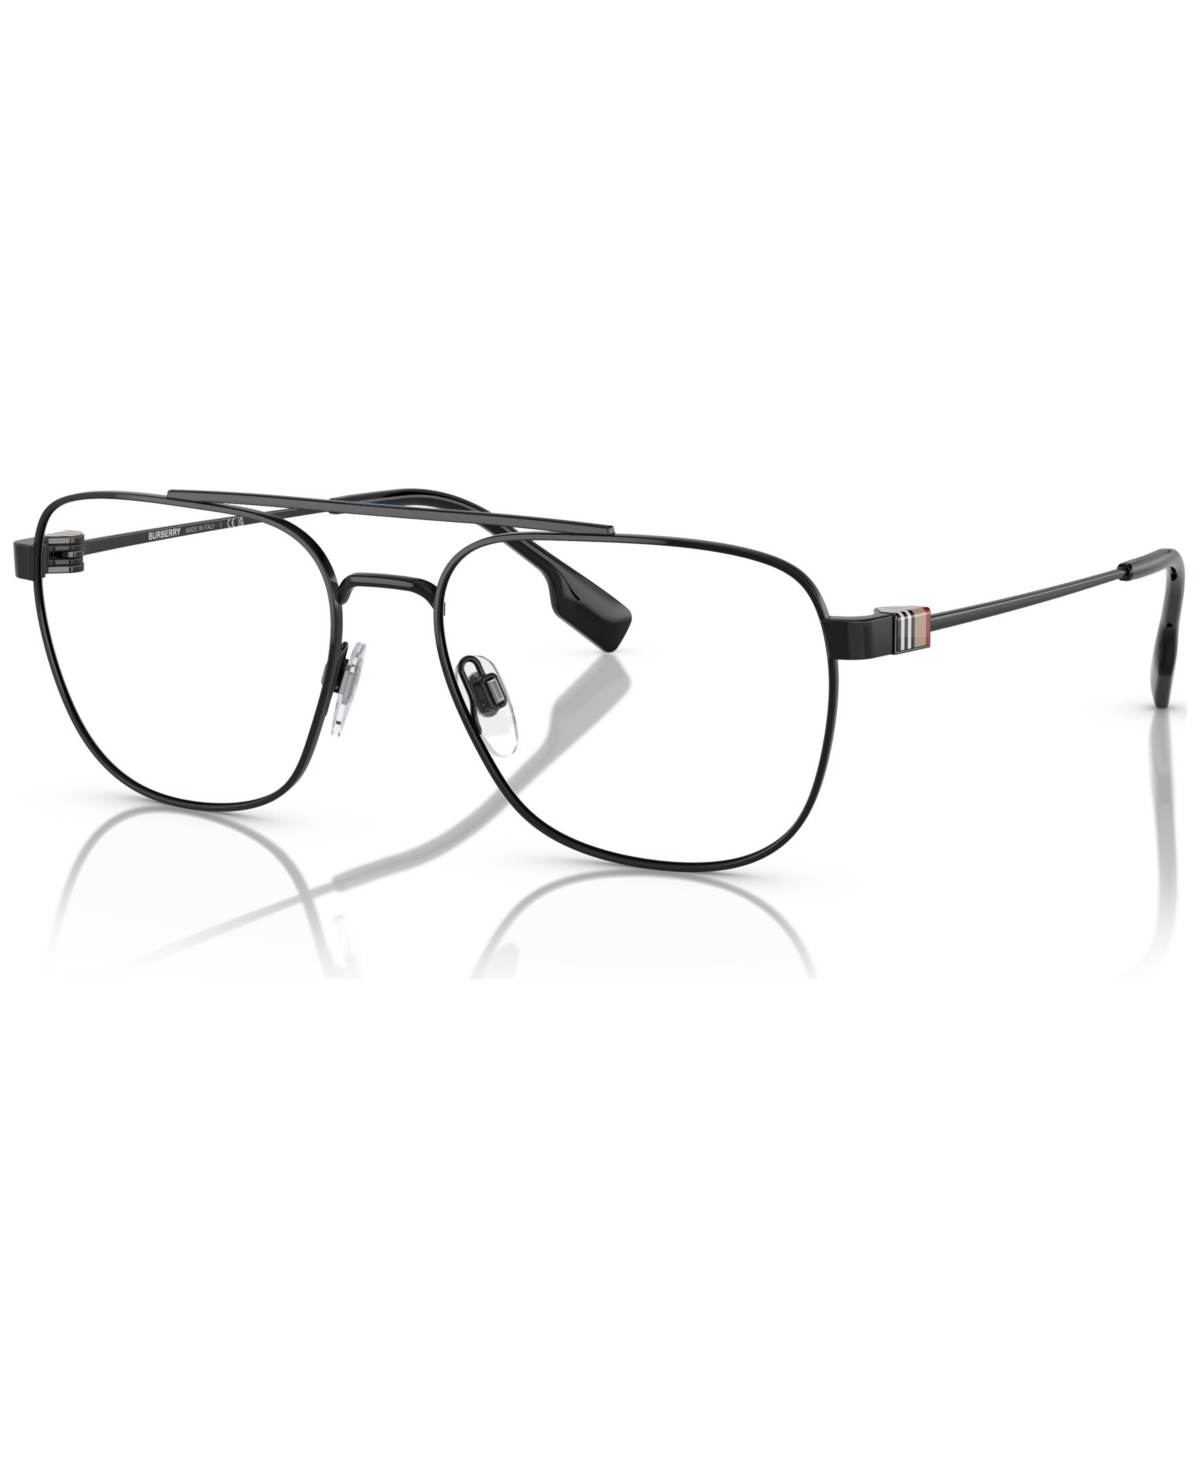 Men's Square Eyeglasses, BE1377 55 - Black